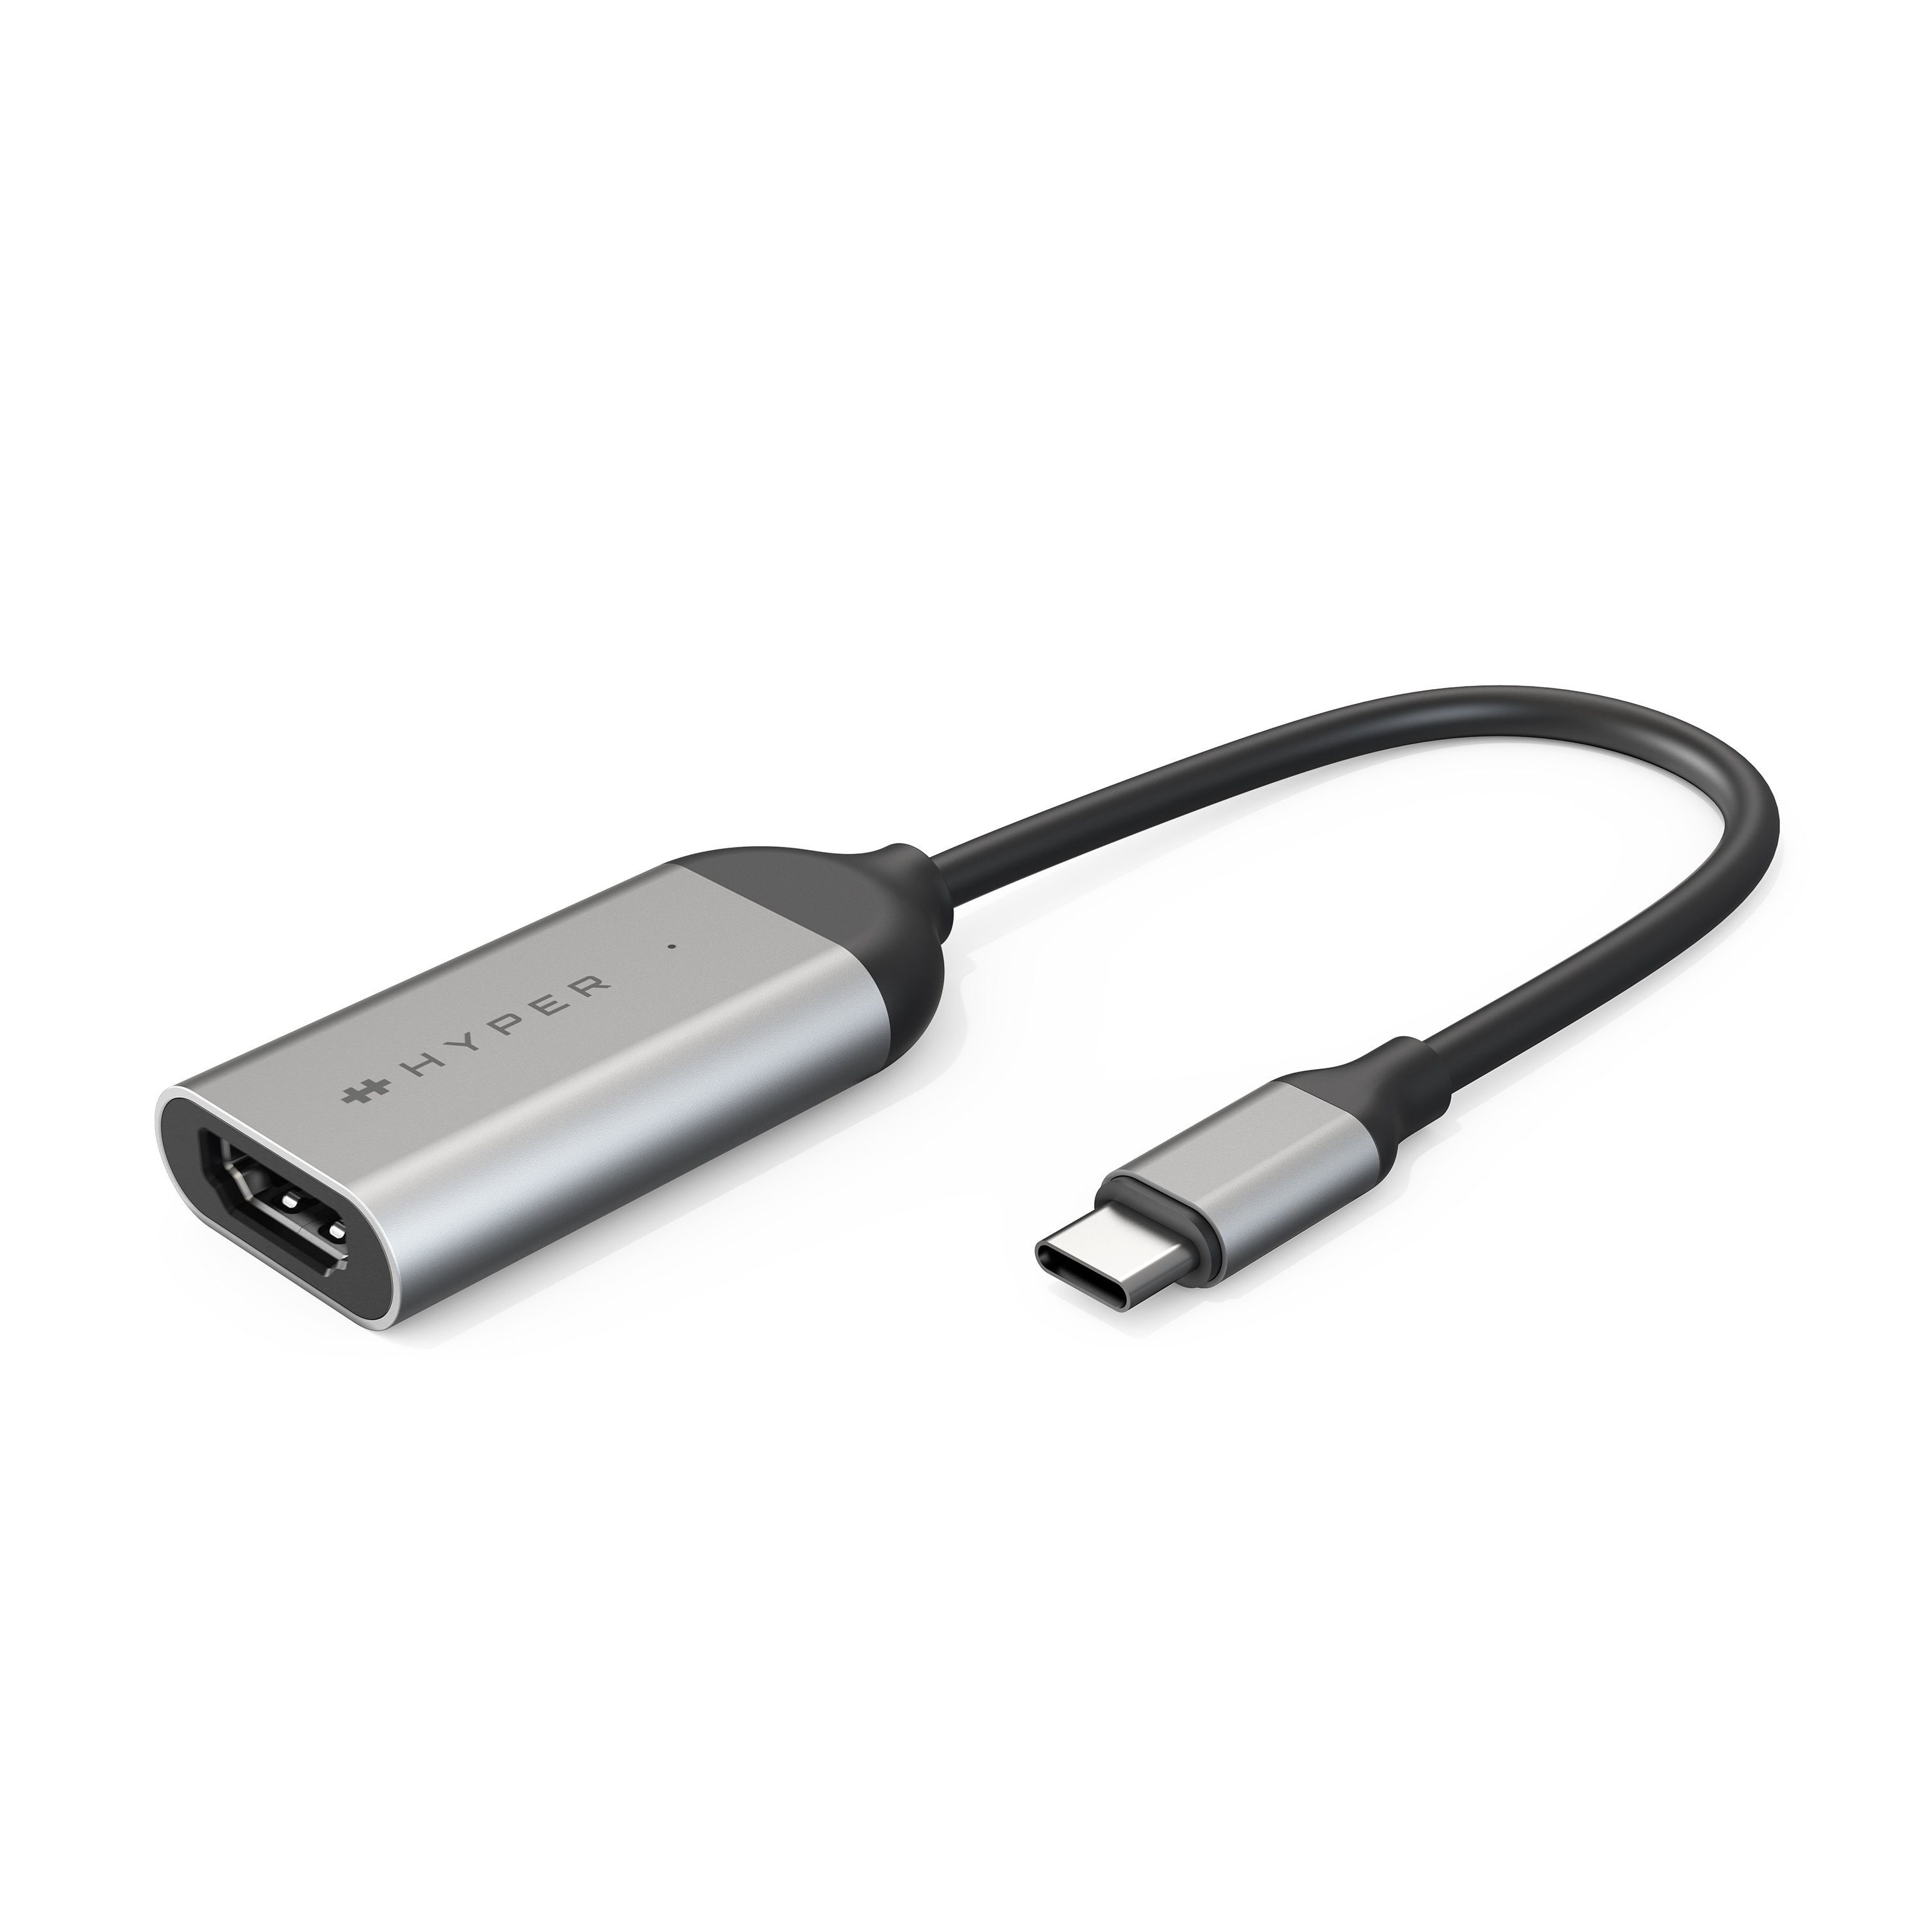 HYPER by Sanho »HyperDrive« USB-Adapter USB-C zu HDMI 8K 60Hz / 4K 144Hz,  [USB-C auf HDMI Adapter mit 8k (60Hz) HDR-Videoübertragung / 4k (144Hz),  Gaming Adapter für flüssige Bildwiedergabe bei höchster Auflösung] -